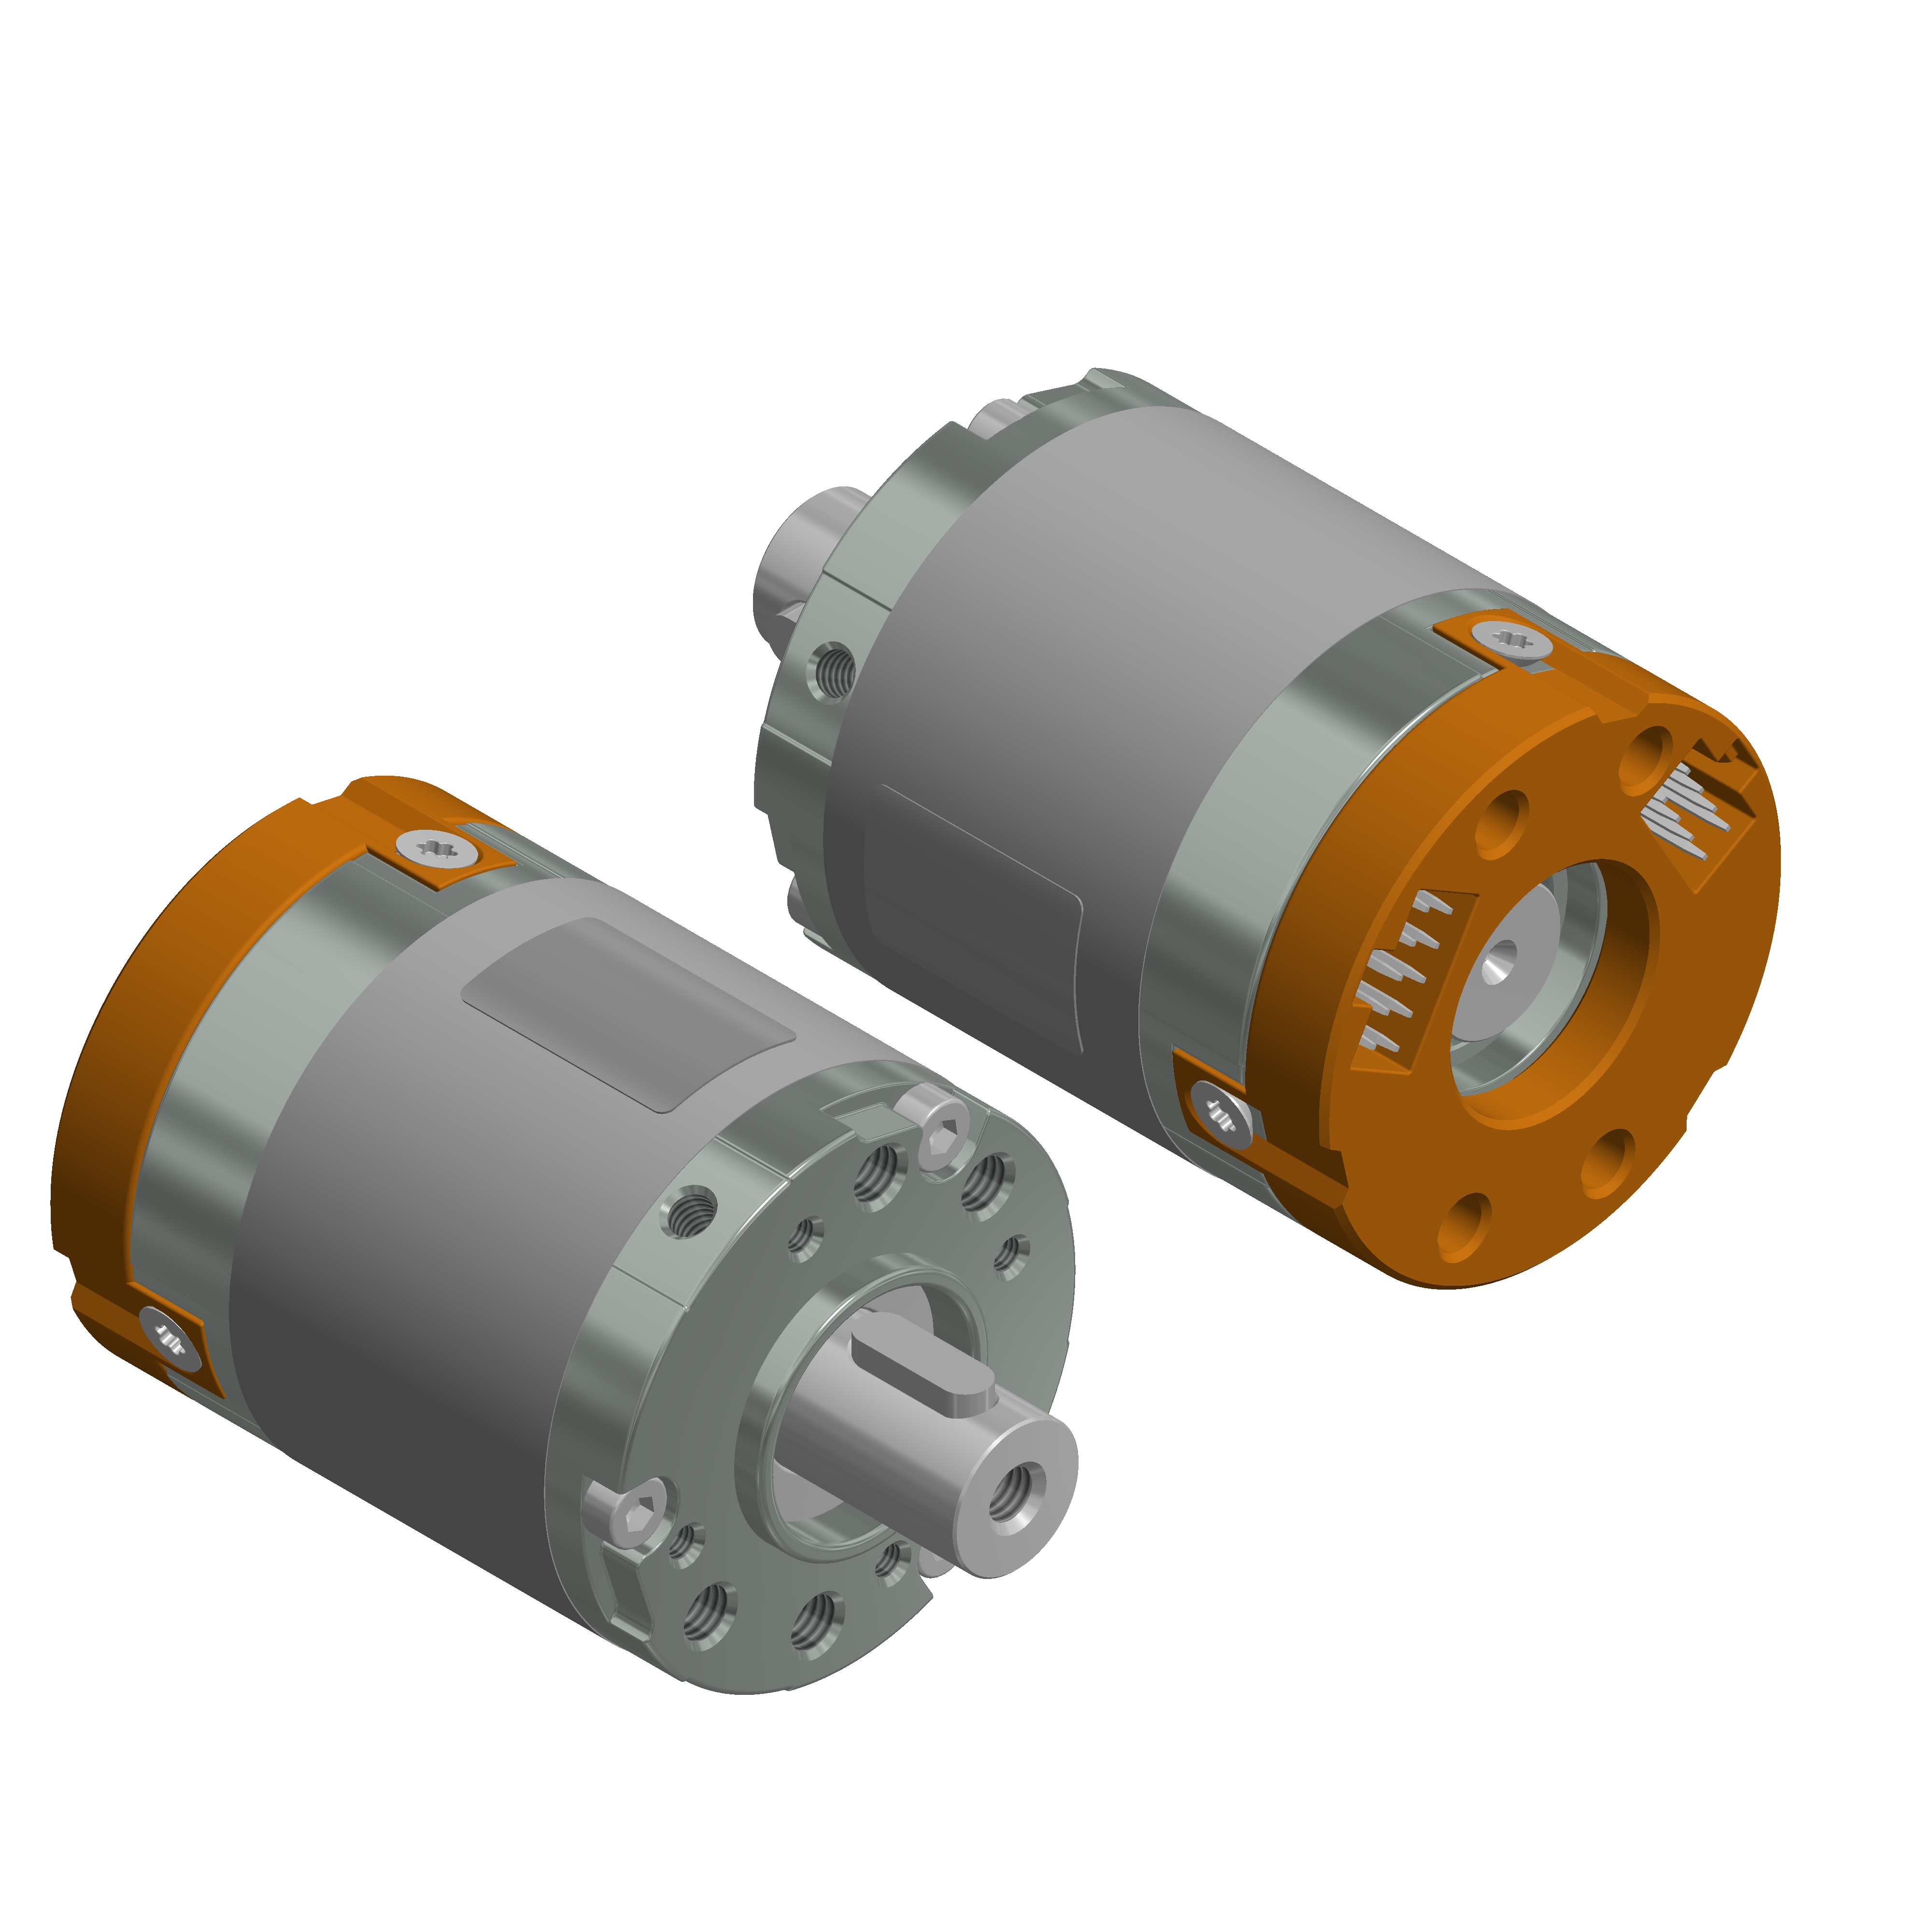 BLDC-Motor mit Neodymmagneten, 14-polig, Hallsensoren und Stecksystem für getriebelose Anwendungen.